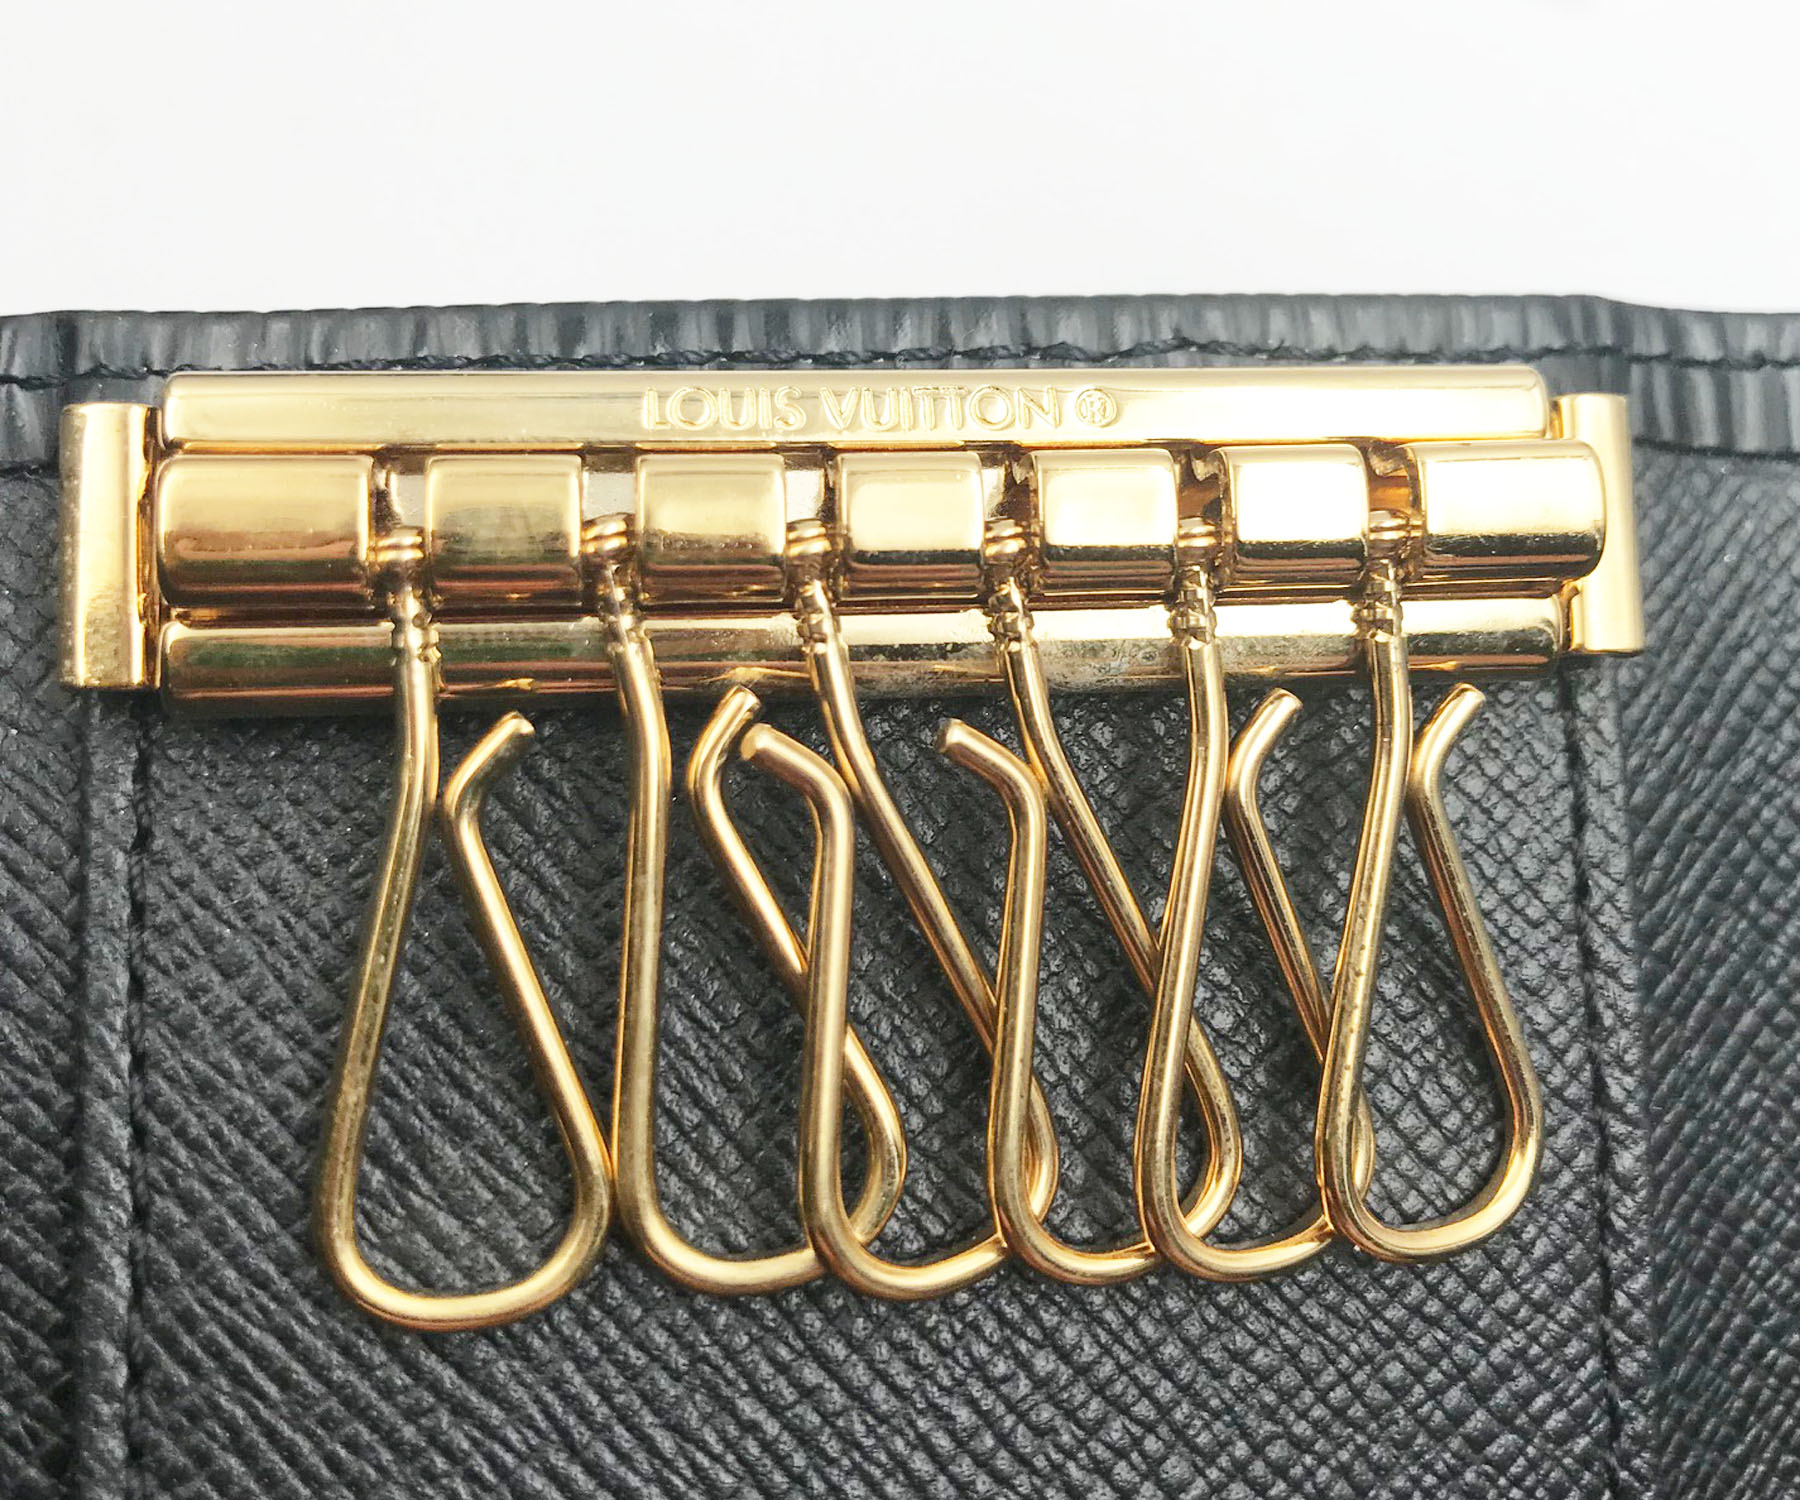 Louis Vuitton LV gold button zip wallet 100% authentic